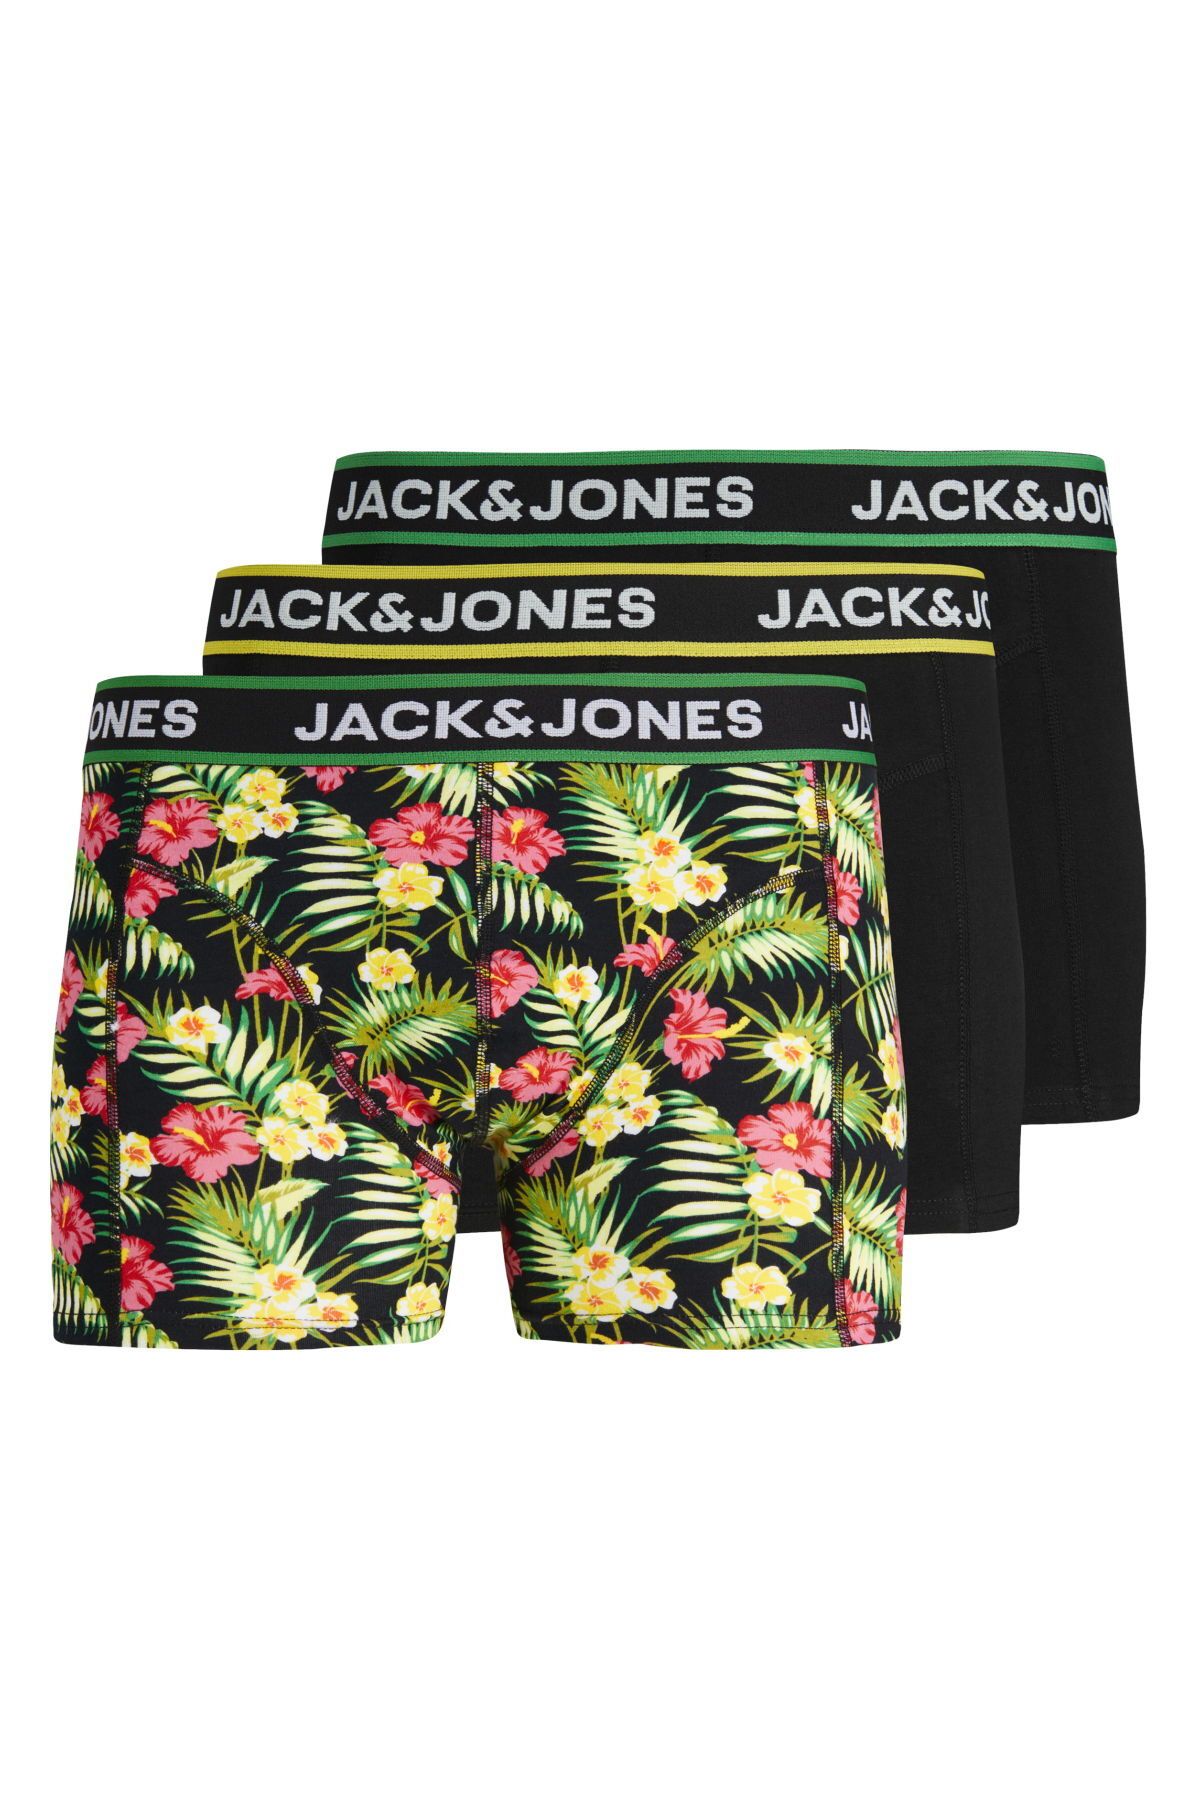 Jack & Jones Çocuk Logolu Karışık 3'lü Boxer Paketi - Pink Flowers